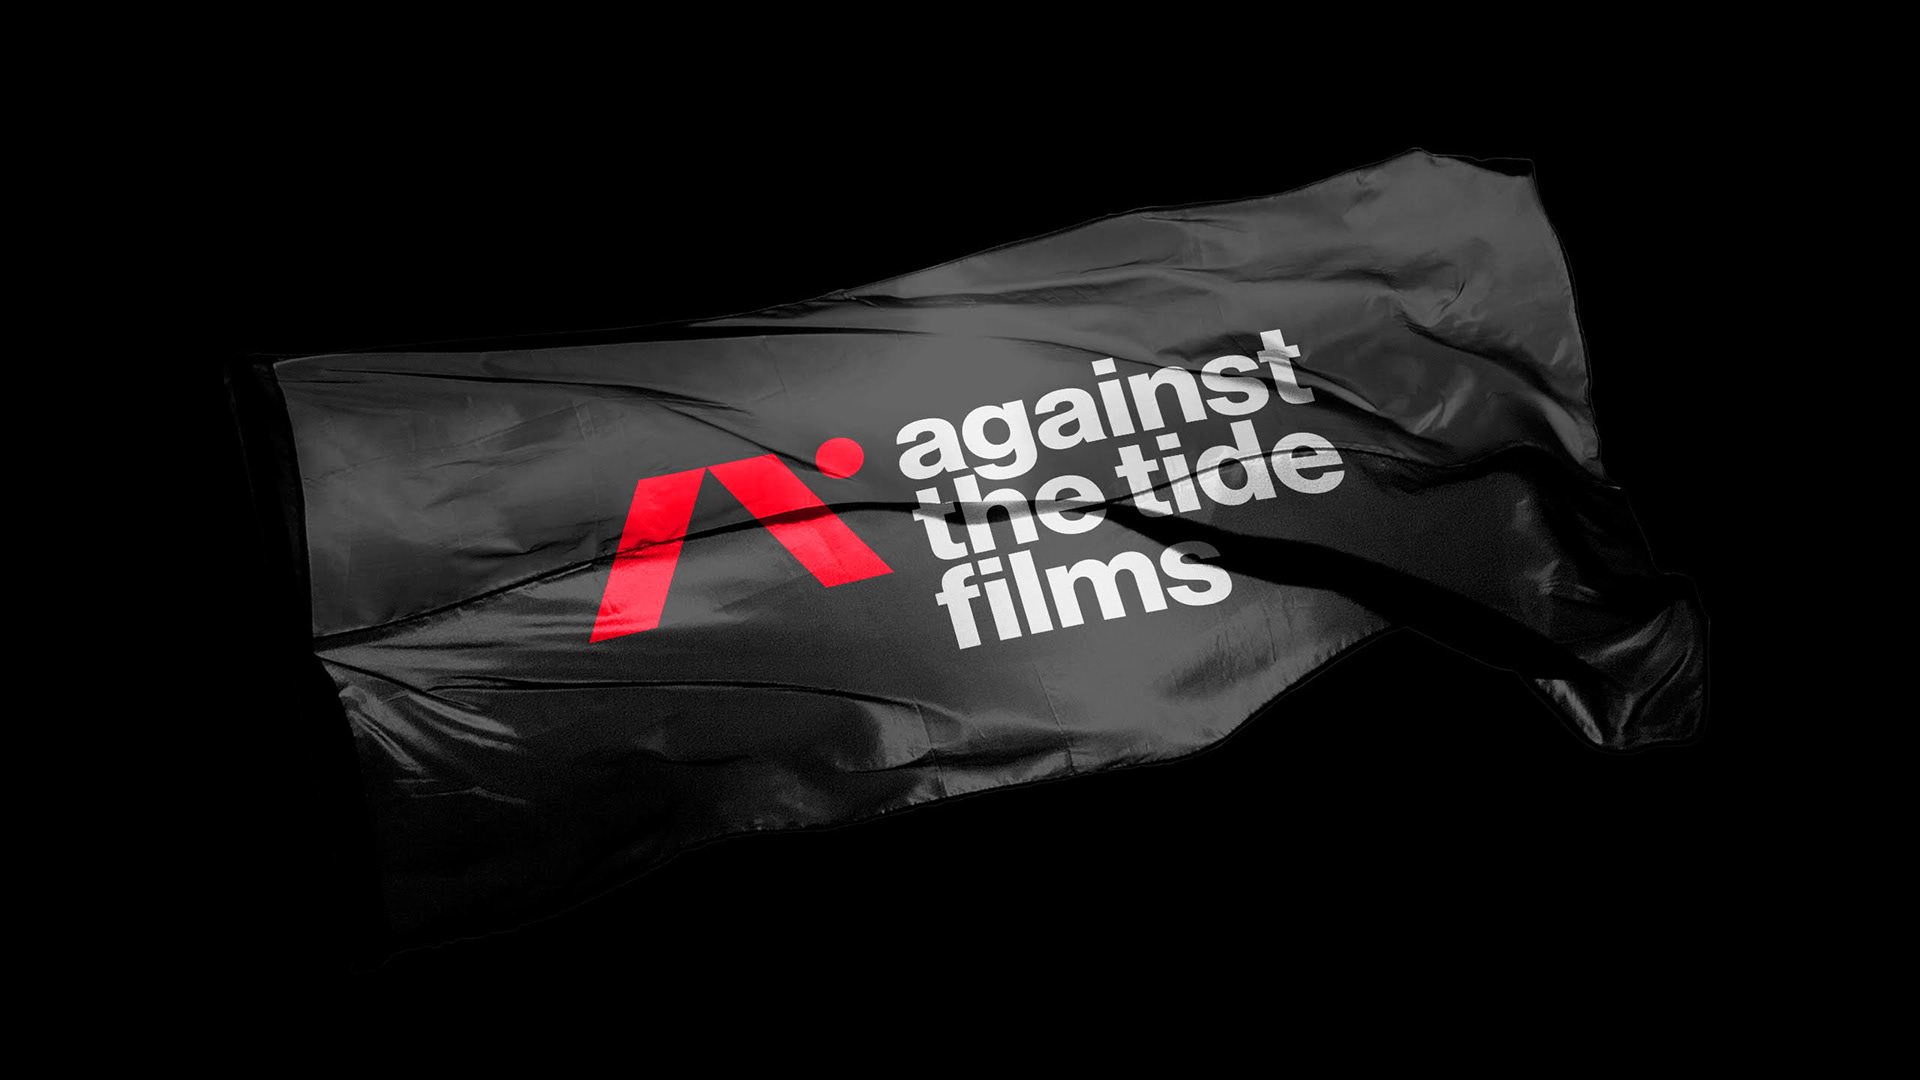 1-Studio-Hrastar-Against-The-Tide-Films-world-brand-design.jpg